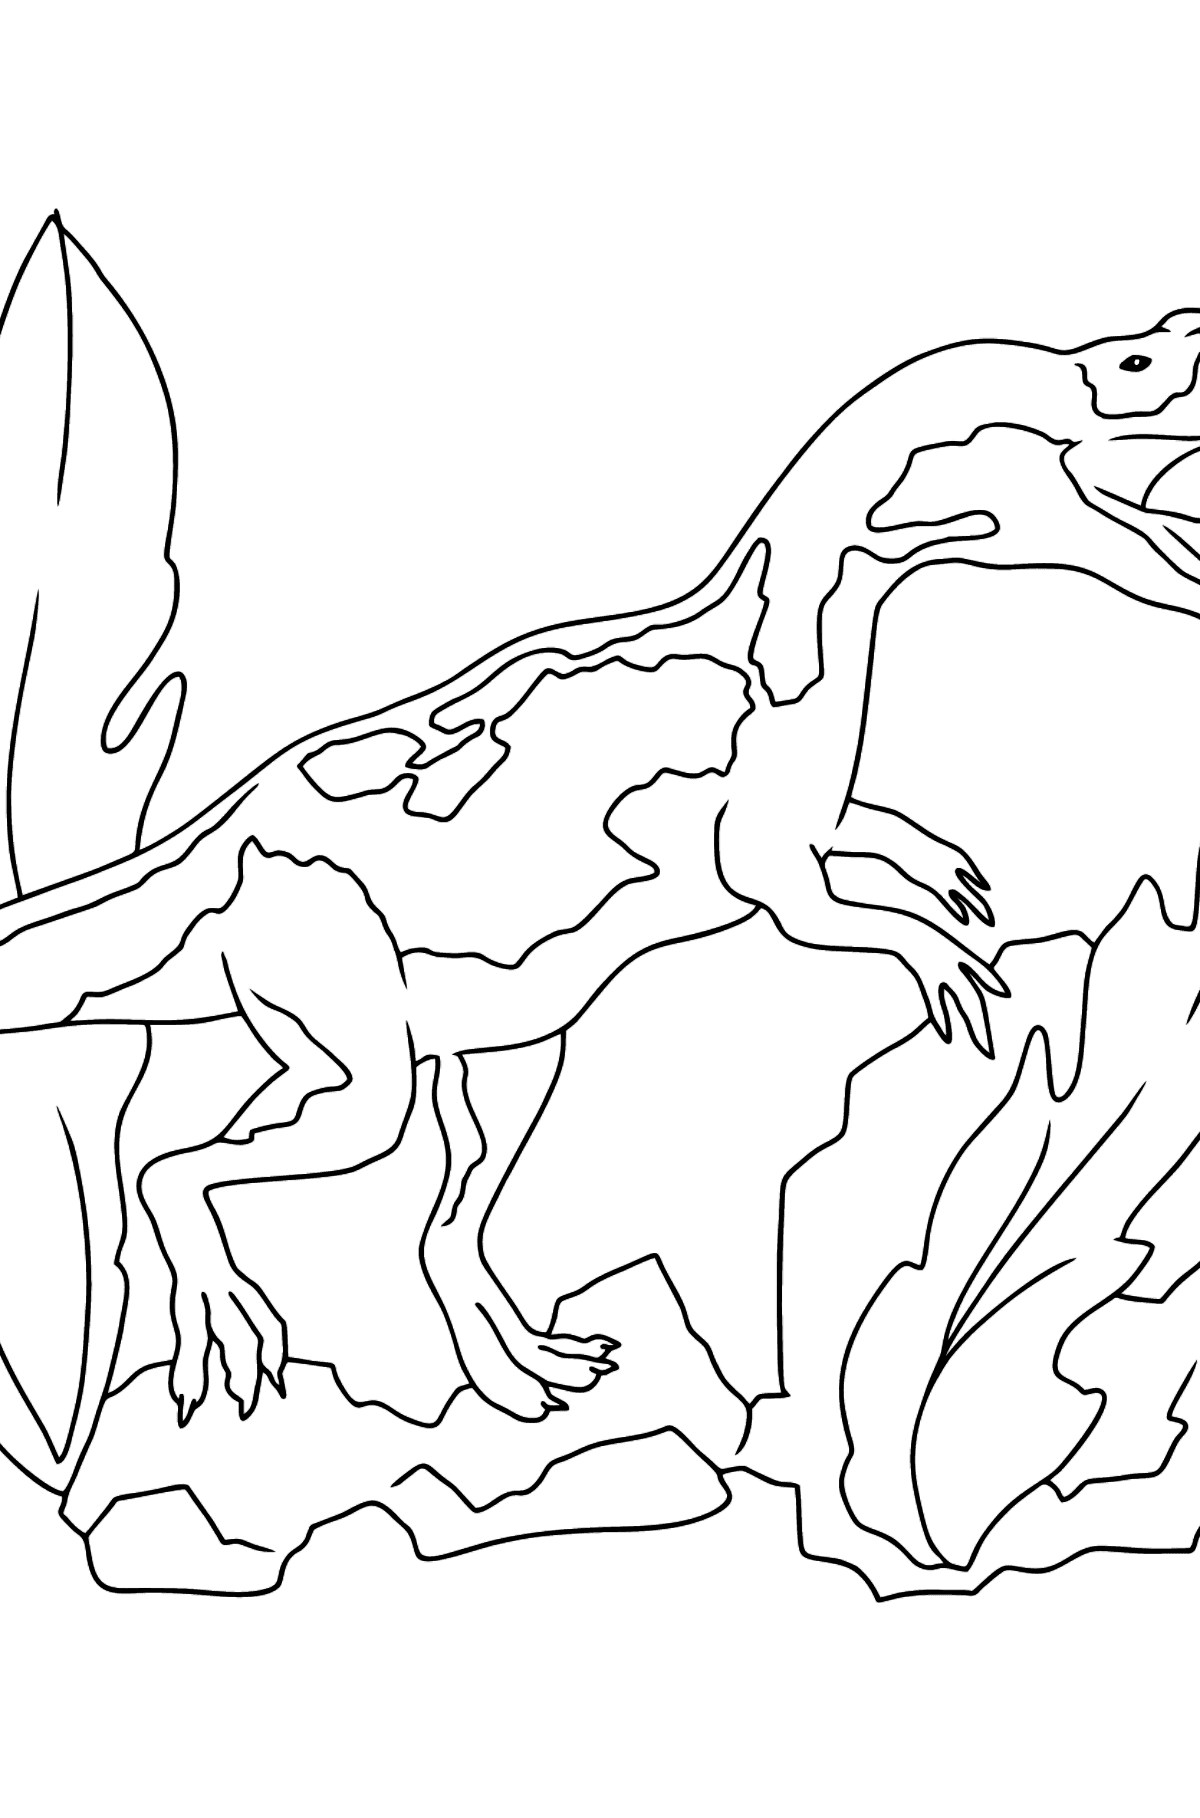 Dibujo para colorear de dinosaurio jurásico (fácil) - Dibujos para Colorear para Niños